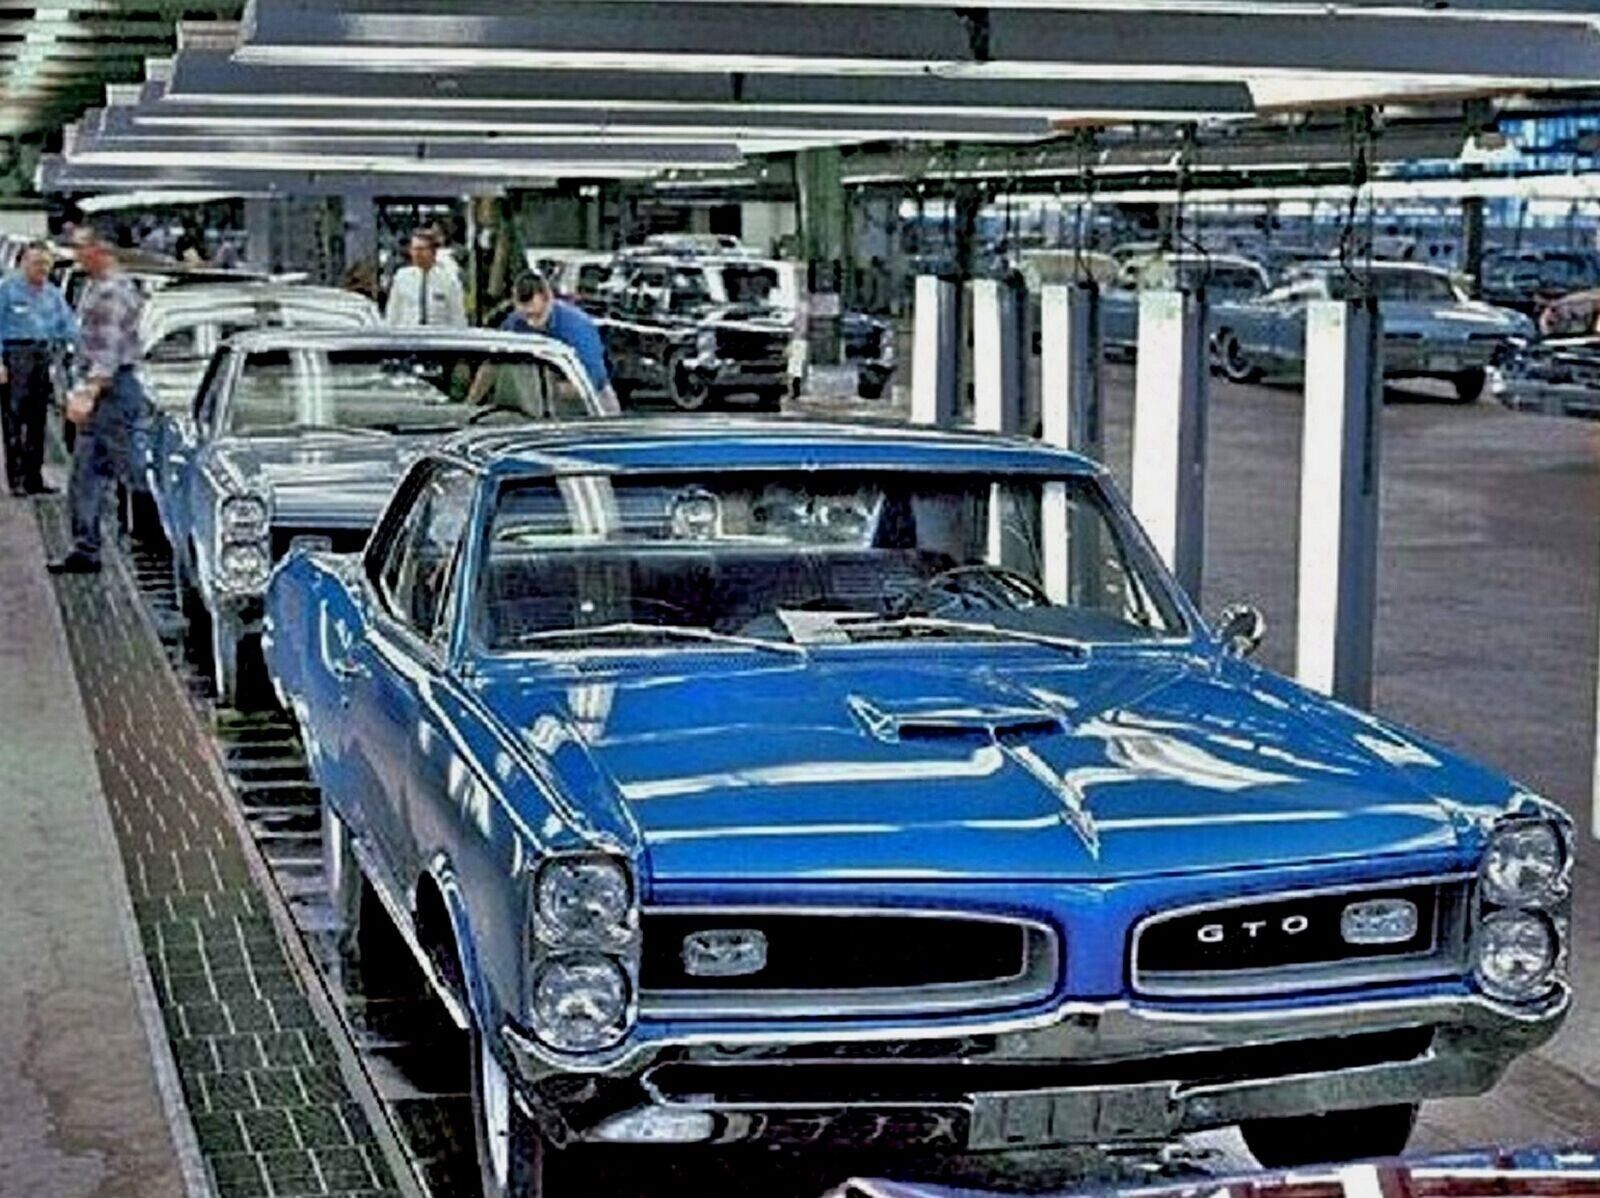 1966 PONTIAC GTO Factory ASSEMBLY LINE Classic Car Retro Poster Photo 11x17